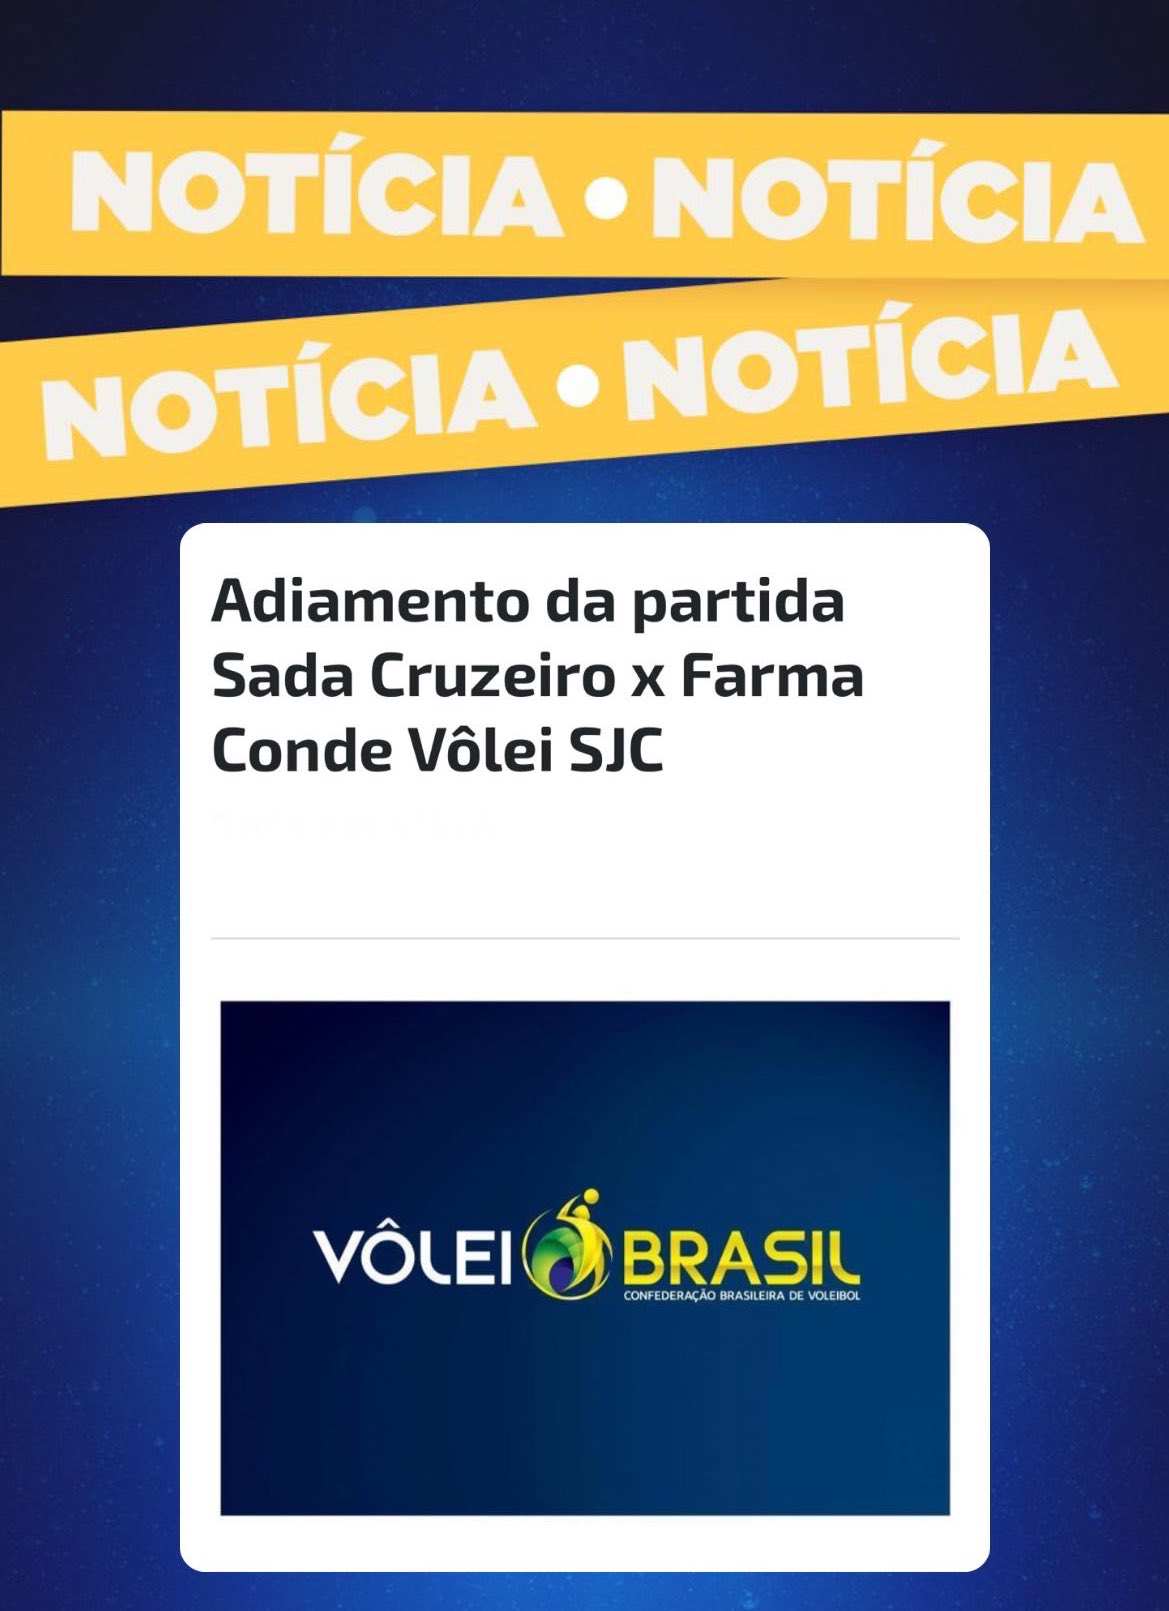 Equipe Sada - CBV - Confederação Brasileira de Voleibol, quem é o